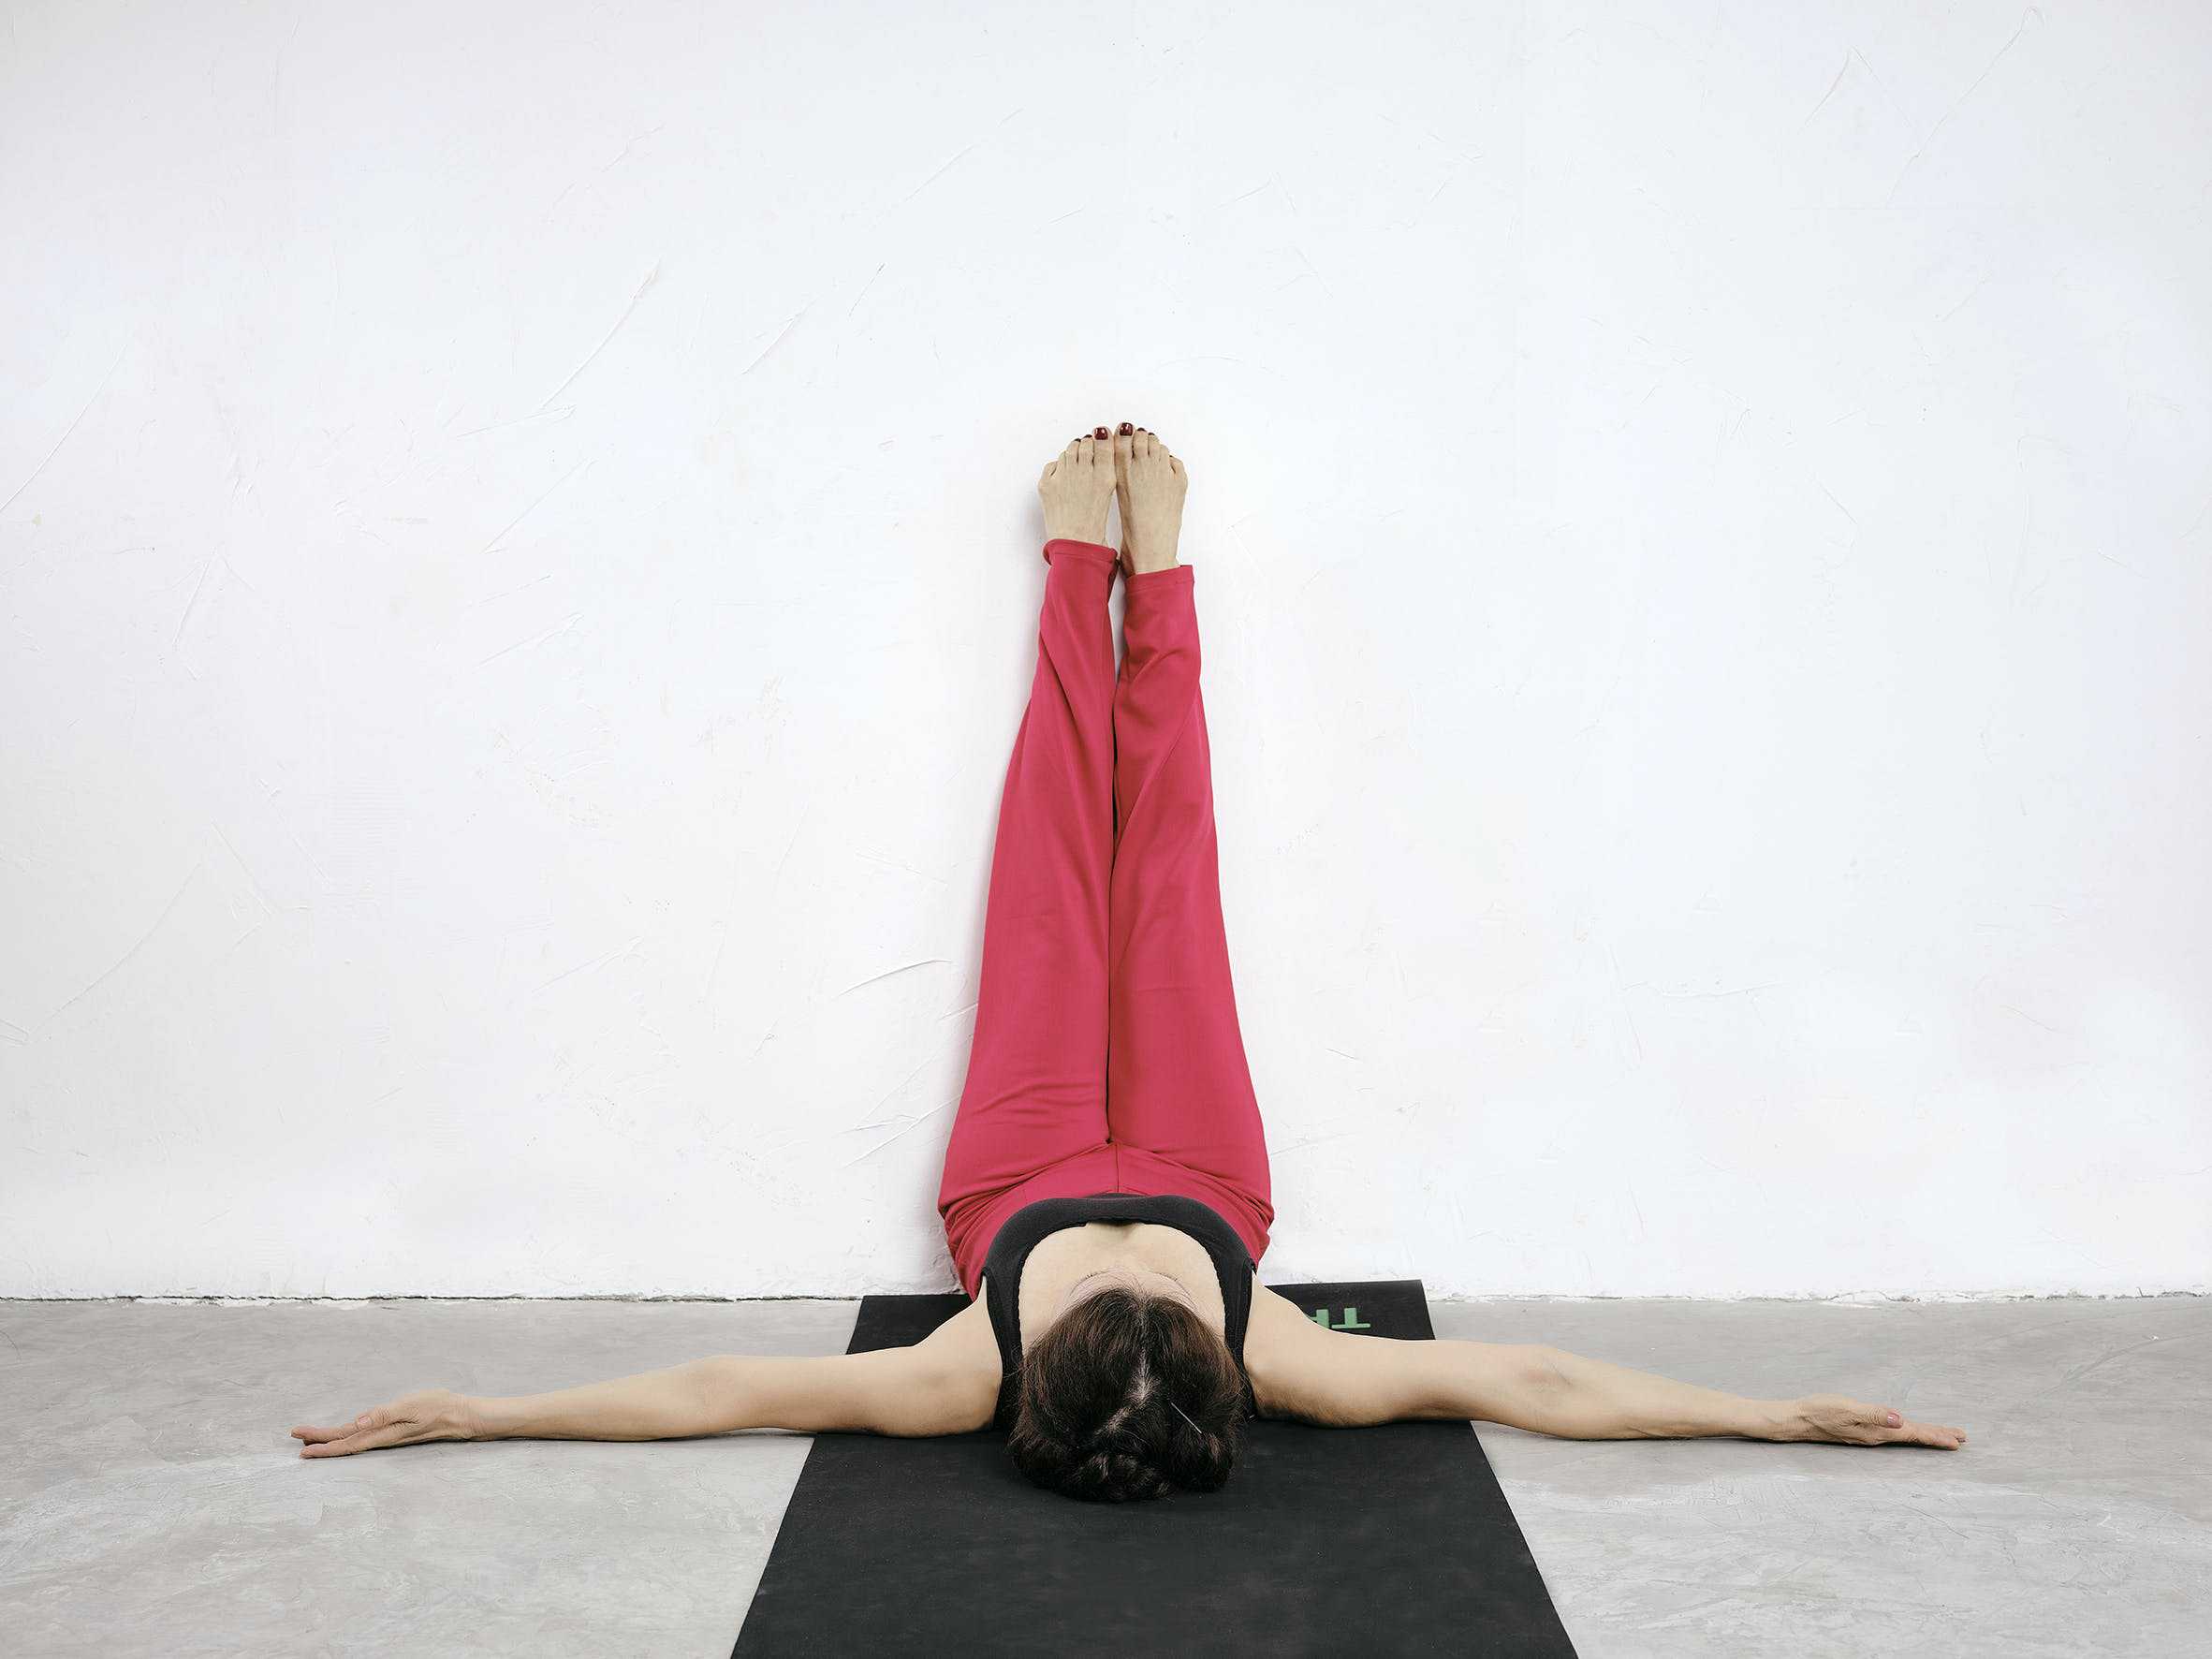 Tập yoga giúp cải thiện sức khỏe thể chất, tinh thần và trị bệnh mất ngủ